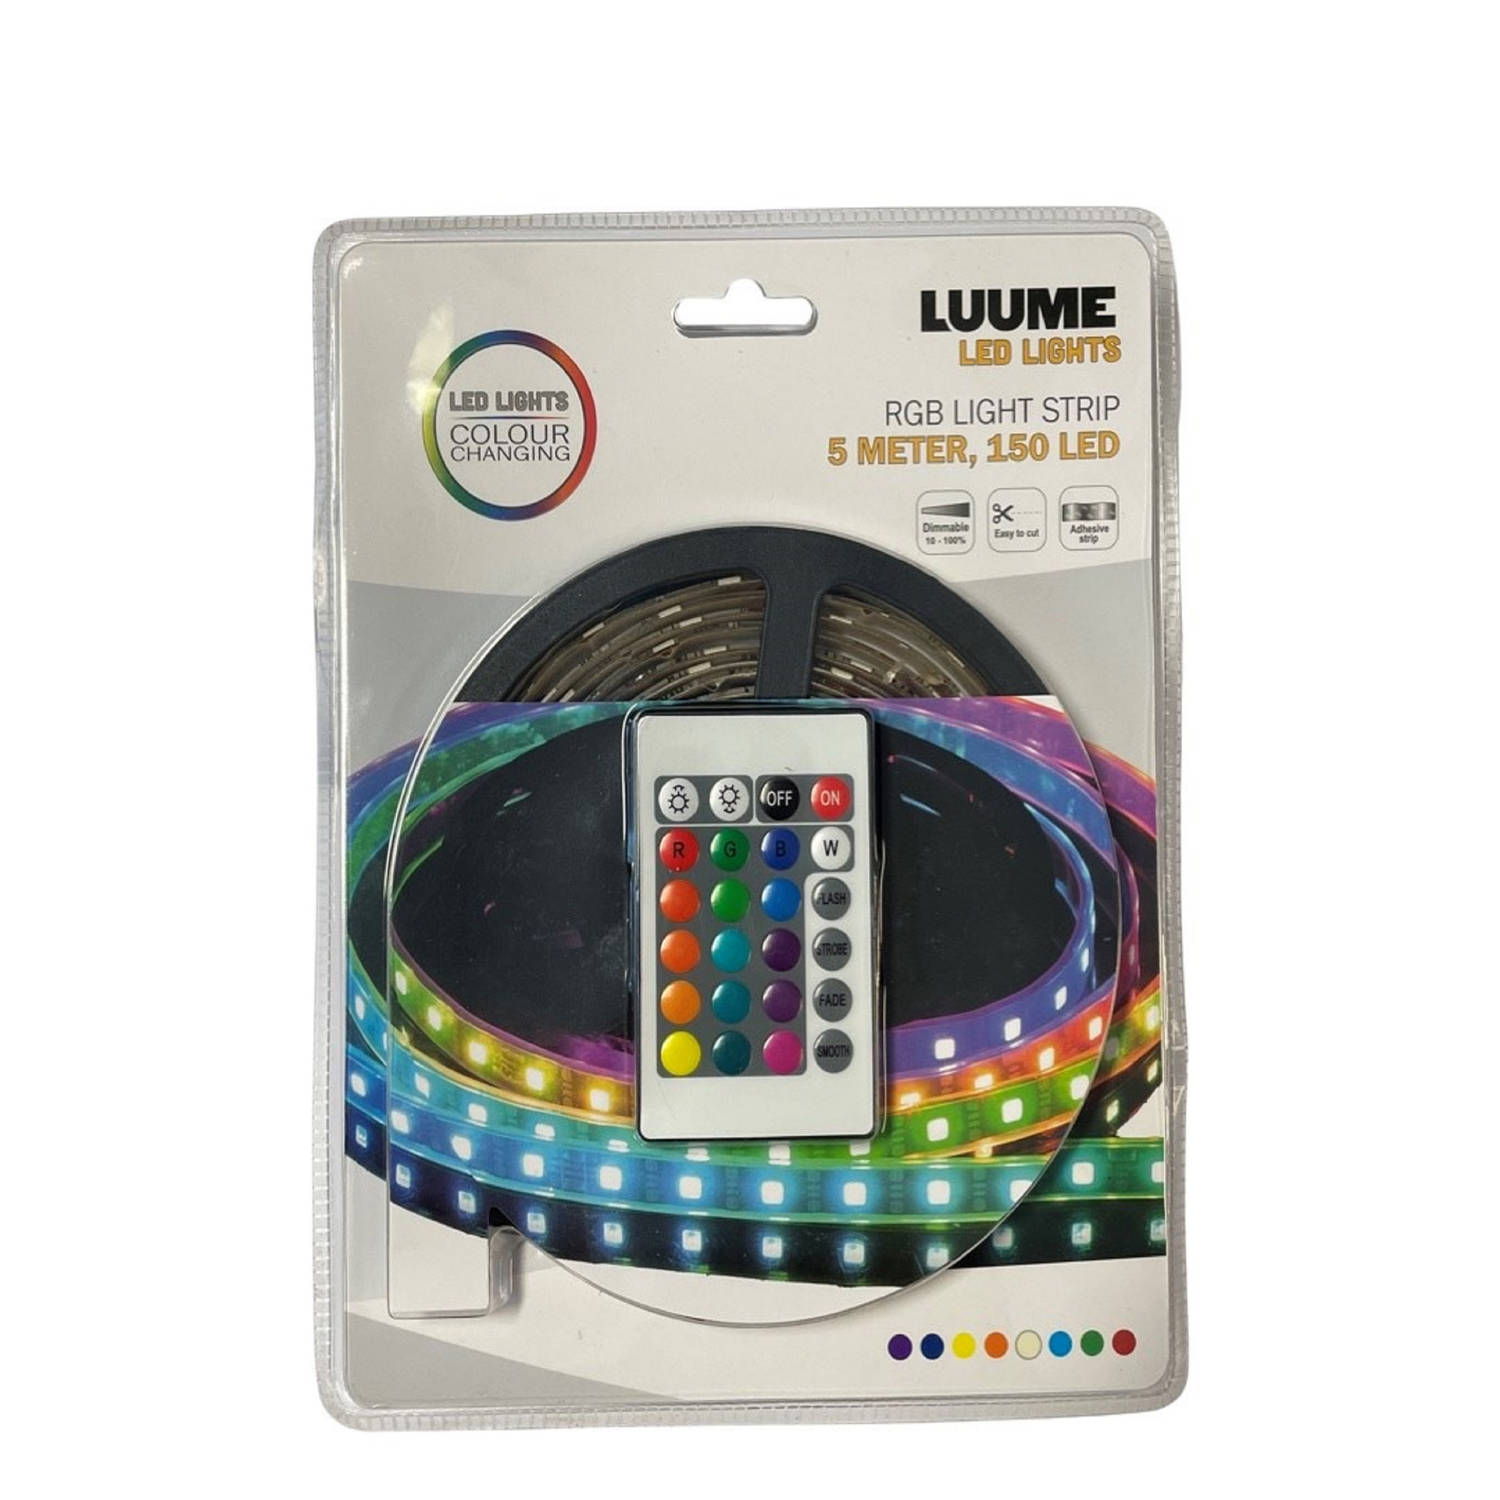 Gezond alarm afbreken Soundlogic LED strip 5m multi colour | Blokker